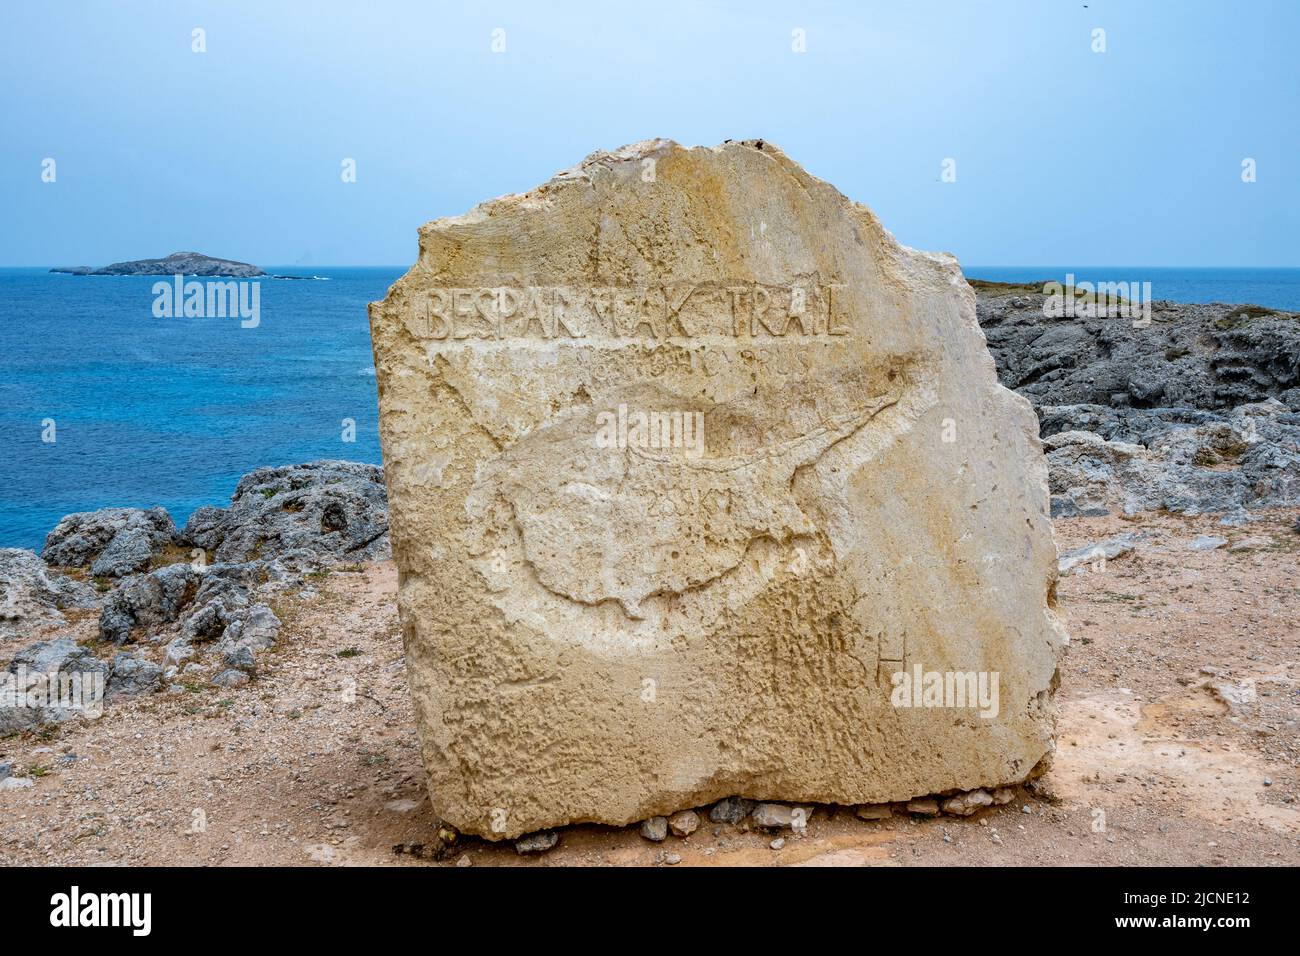 Die Umrisse der Insel Zypern, die auf einer Kalksteinplatte geschnitzt ist, markieren den östlichsten Punkt der Insel, das Kap Apostolos Andreas. Zypern. Stockfoto